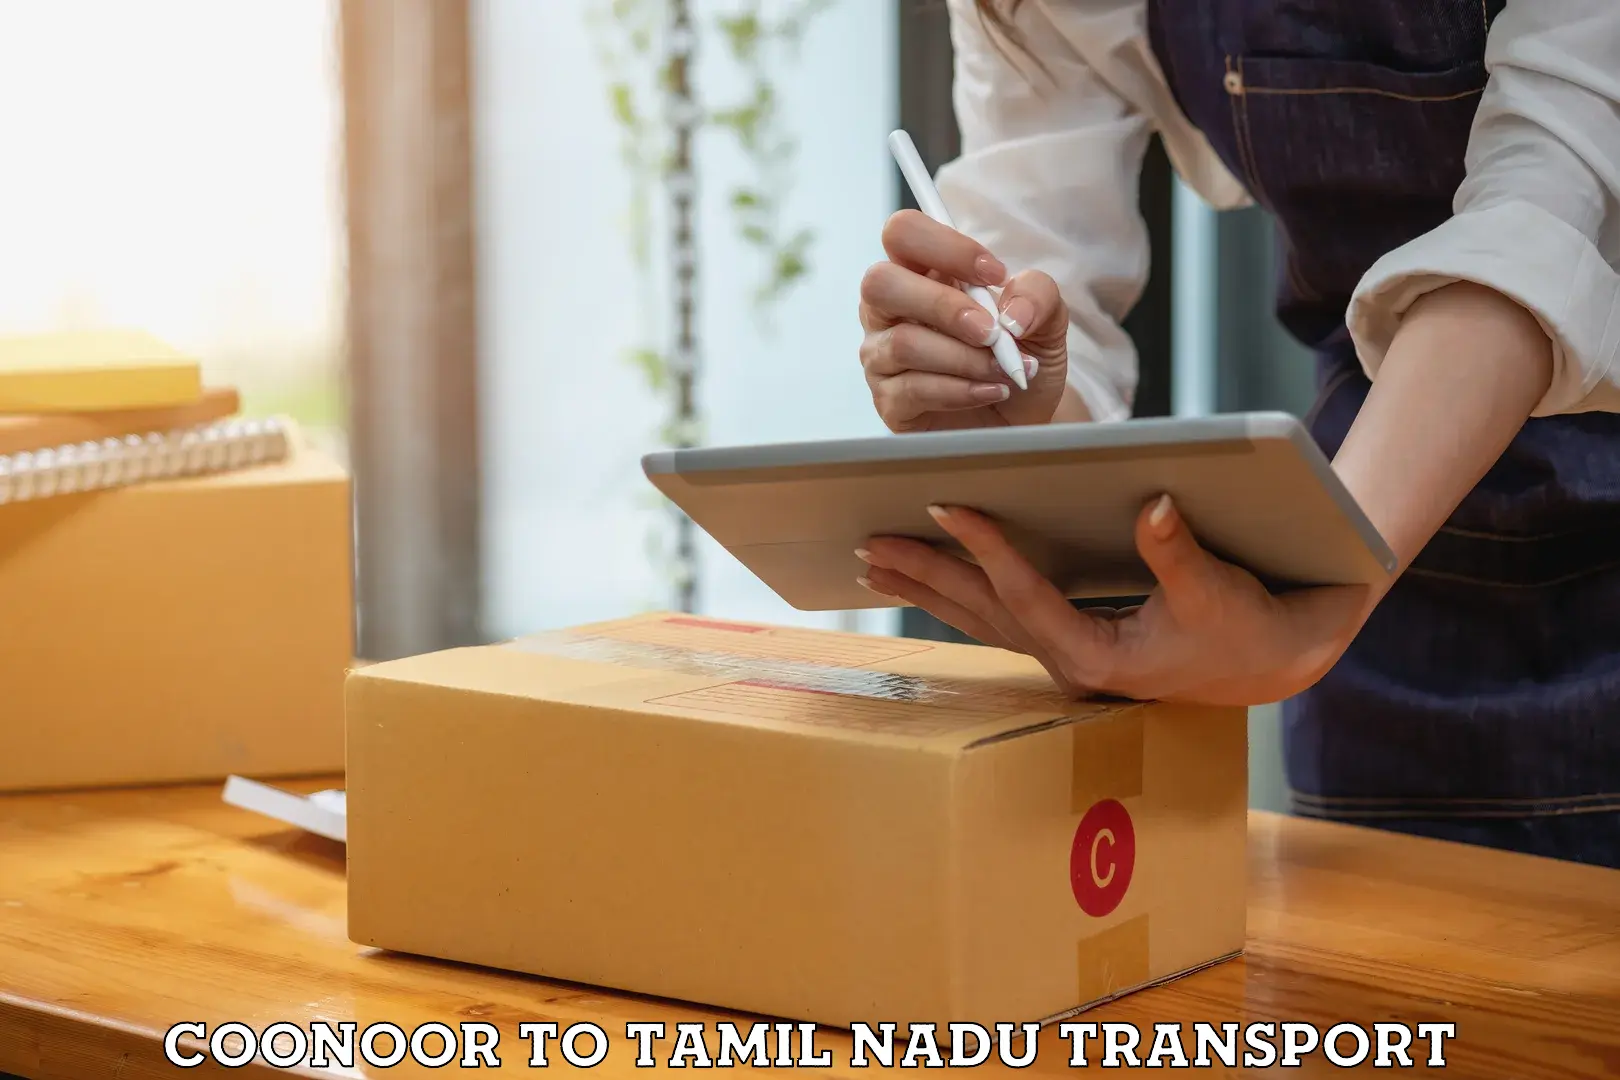 Online transport service Coonoor to Peravurani